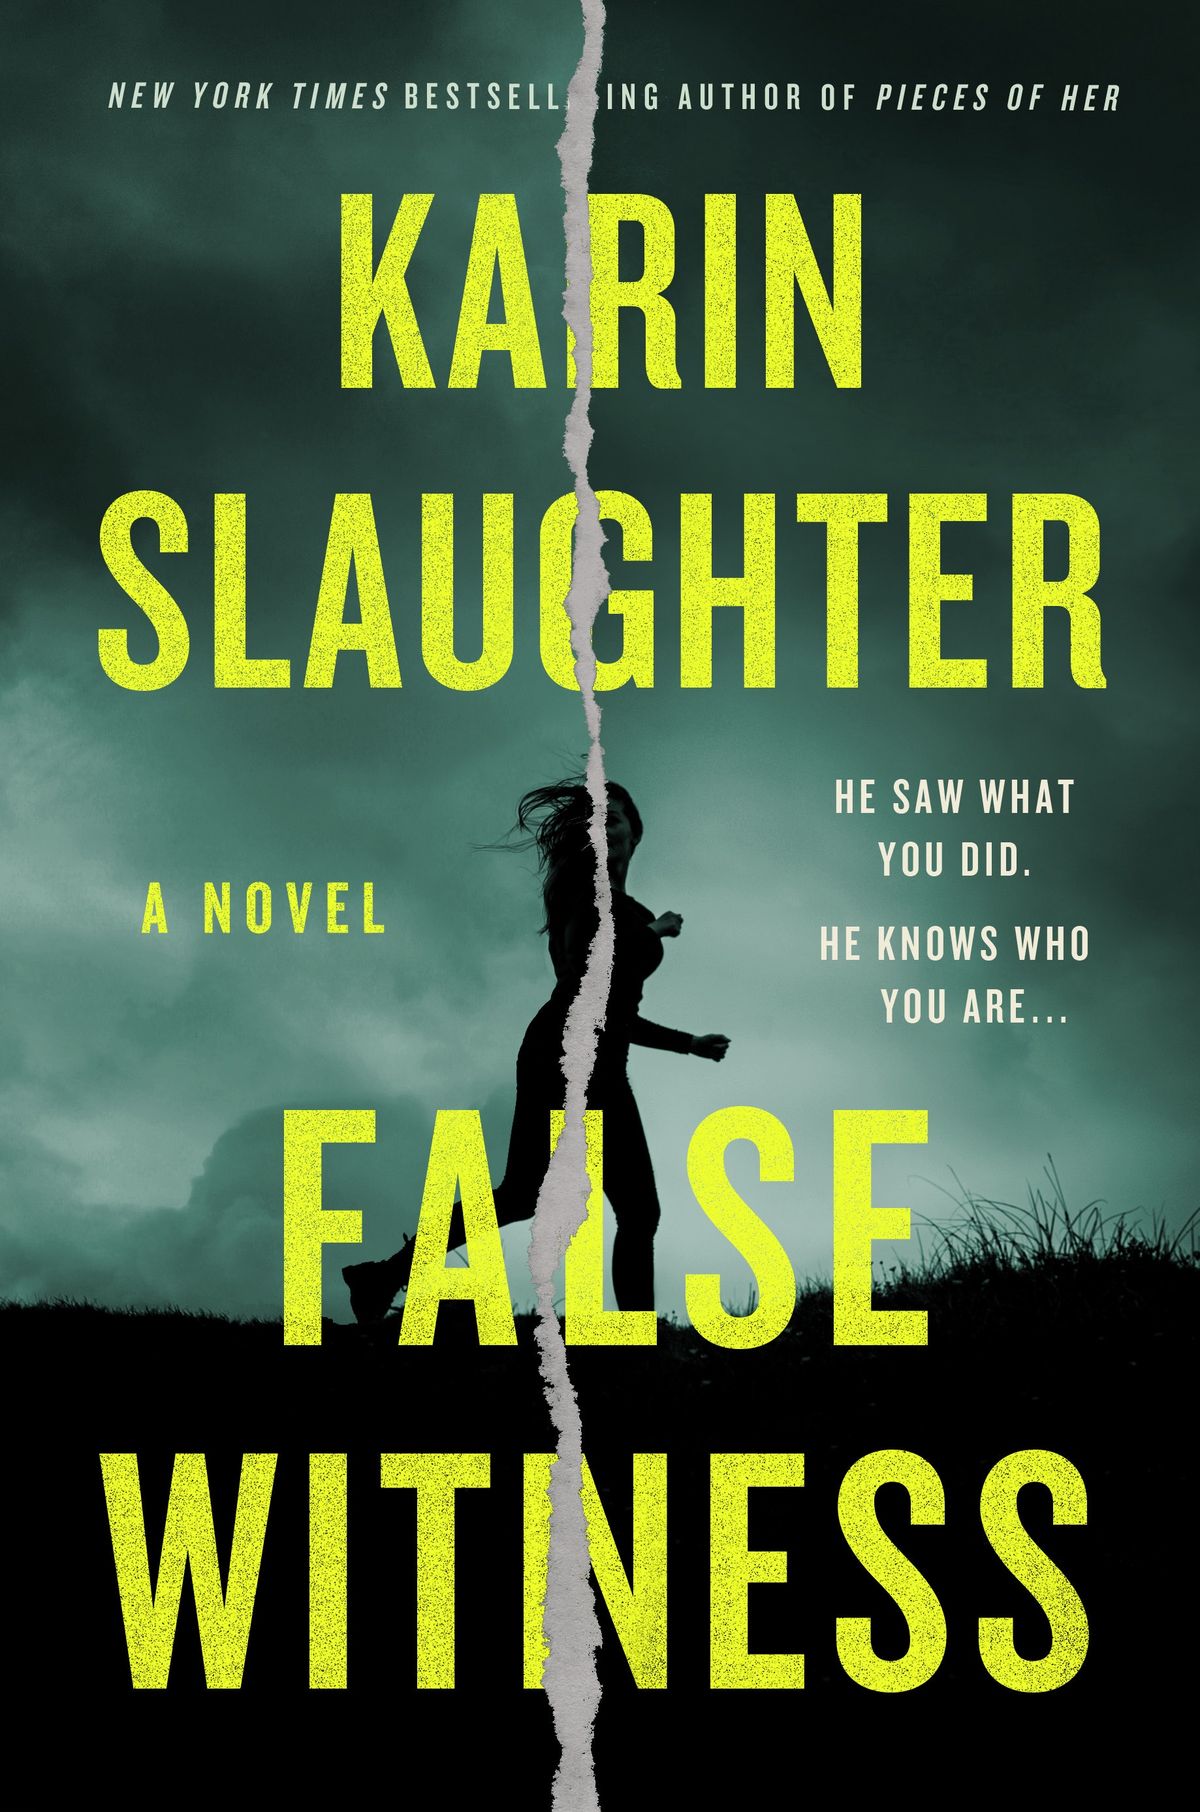 Ti è piaciuto l'estratto della scorsa settimana del falso testimone di Karin Slaughter? C'è solo di meglio.